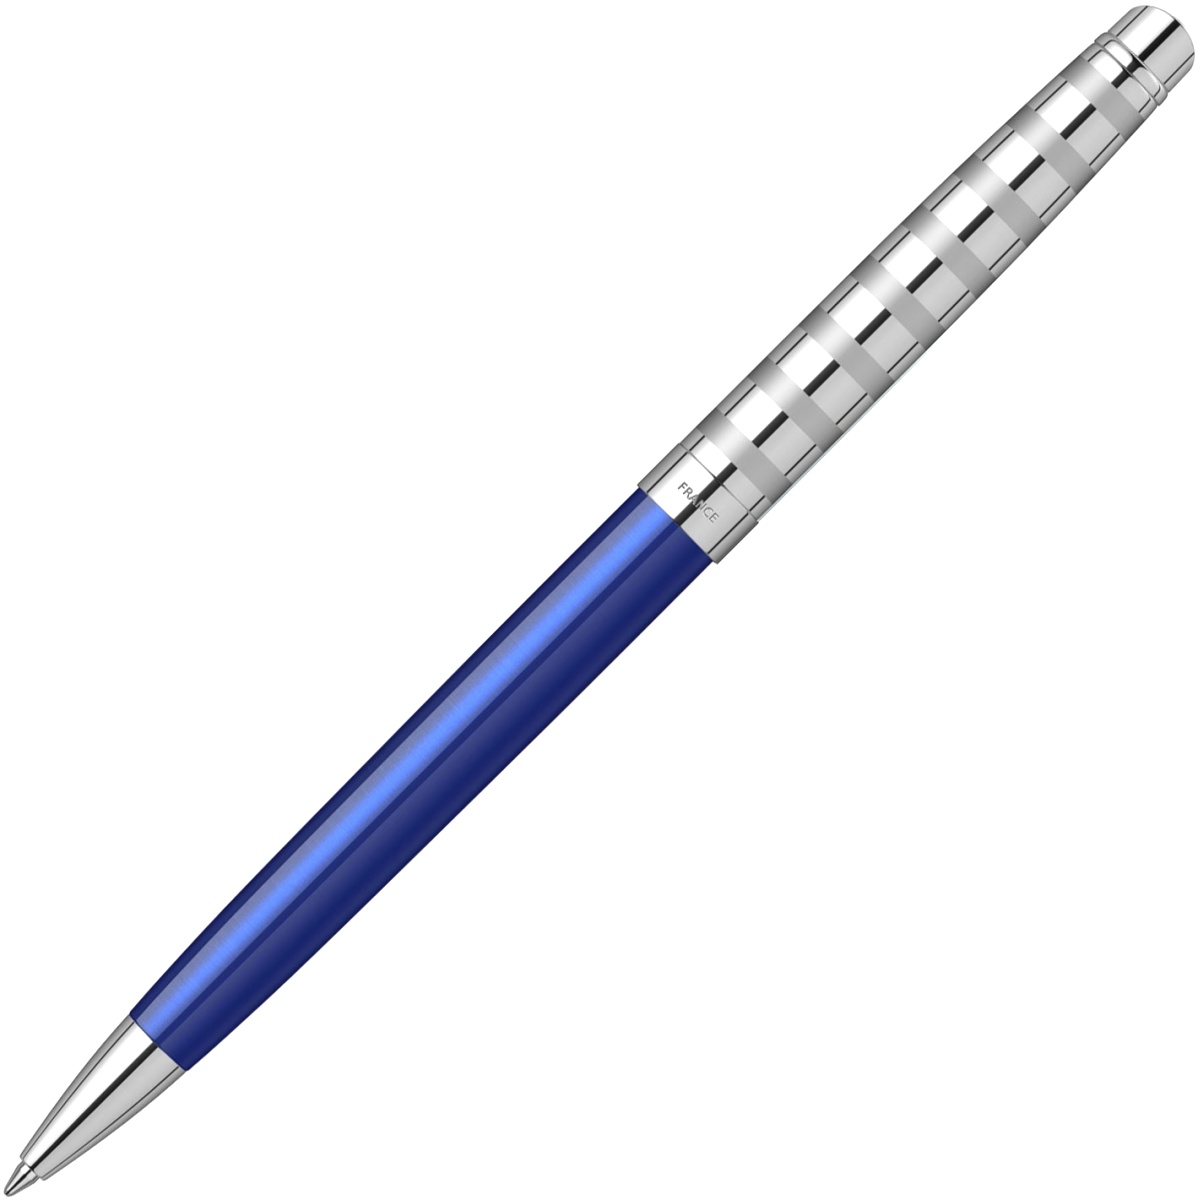  Шариковая ручка Waterman Hemisphere Deluxe 2020, Marine Blue CT, фото 3